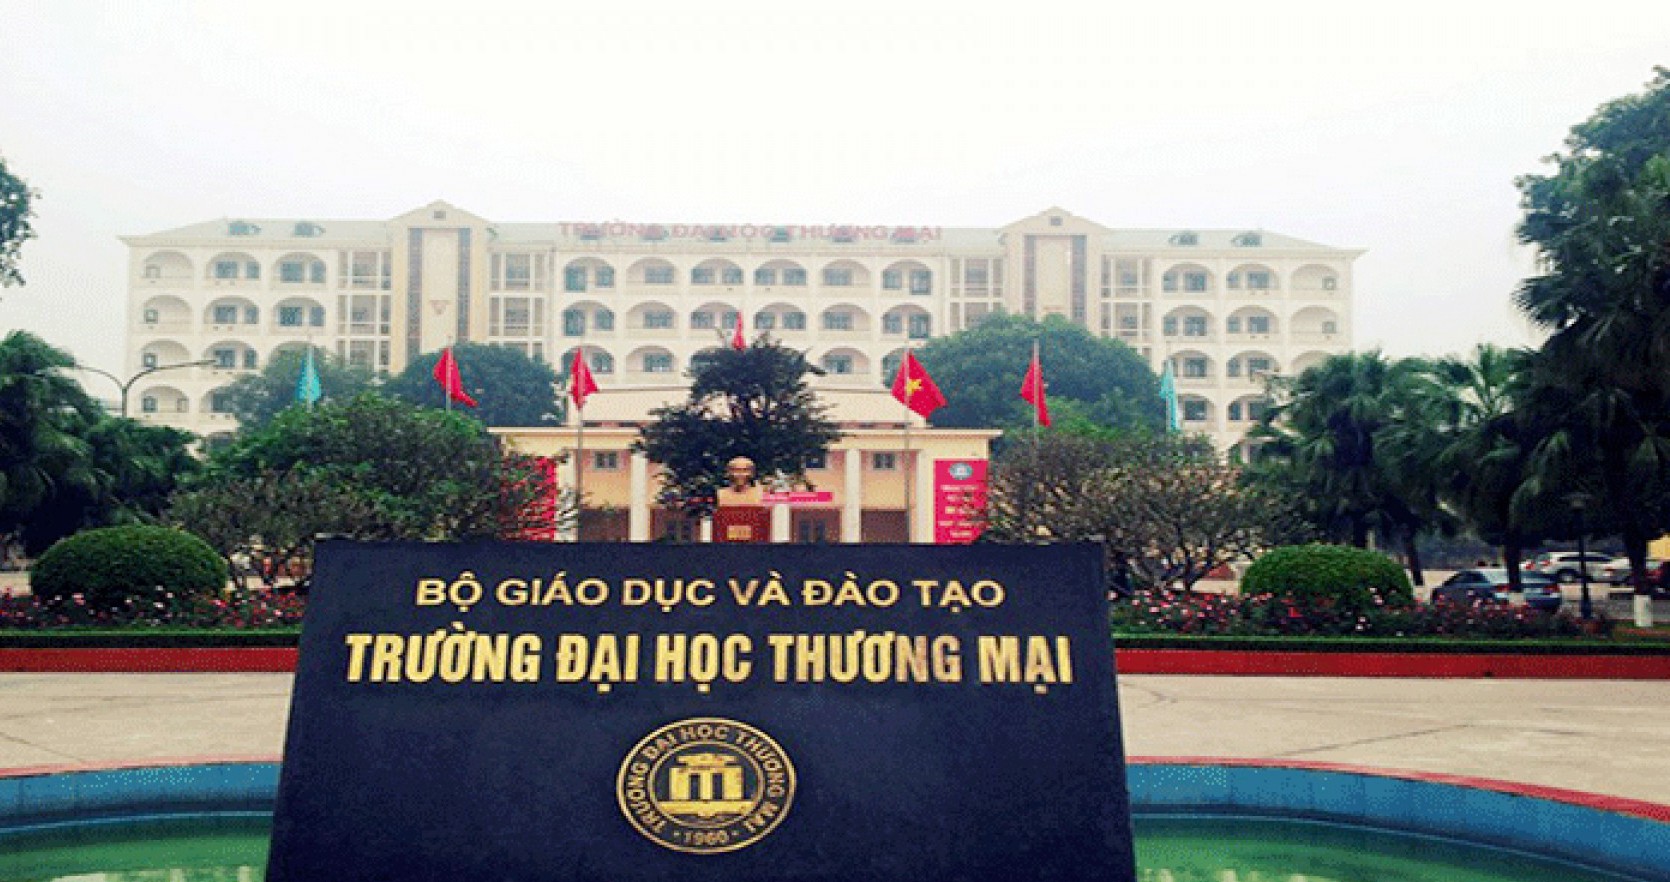 Trường Đại học Thương Mại Hà Nội